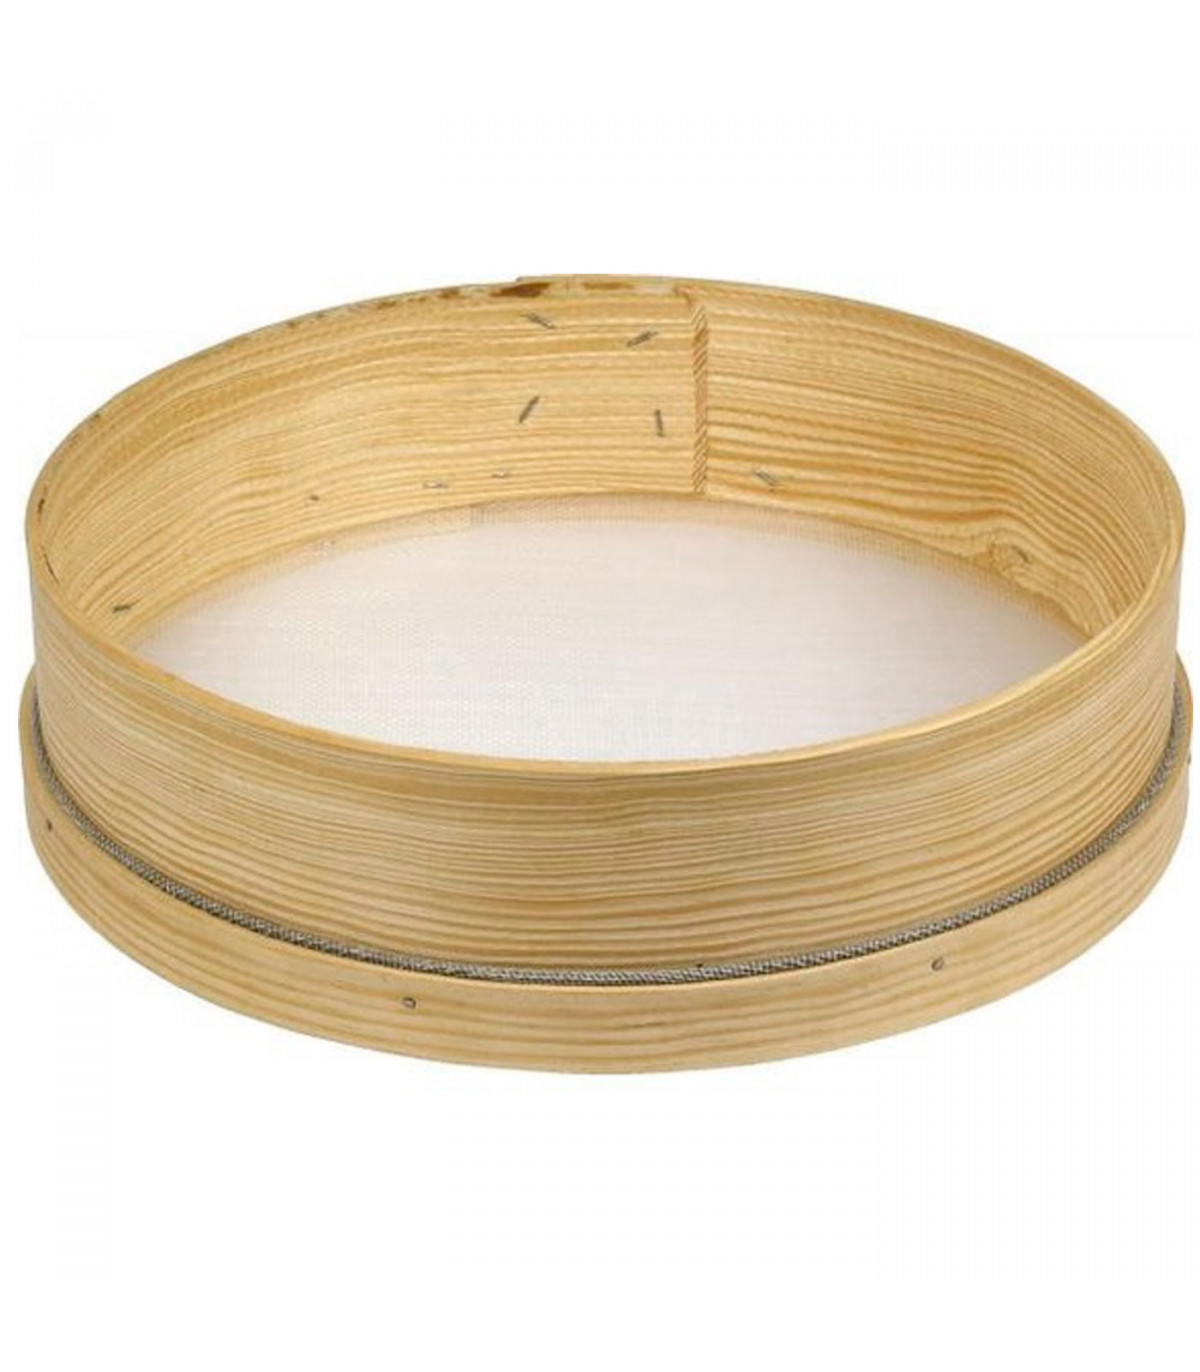 Tamiz de madera con malla fina, diseño tradicional, adecuado para tamizar  harina, azúcar, trigo, arena, colador para